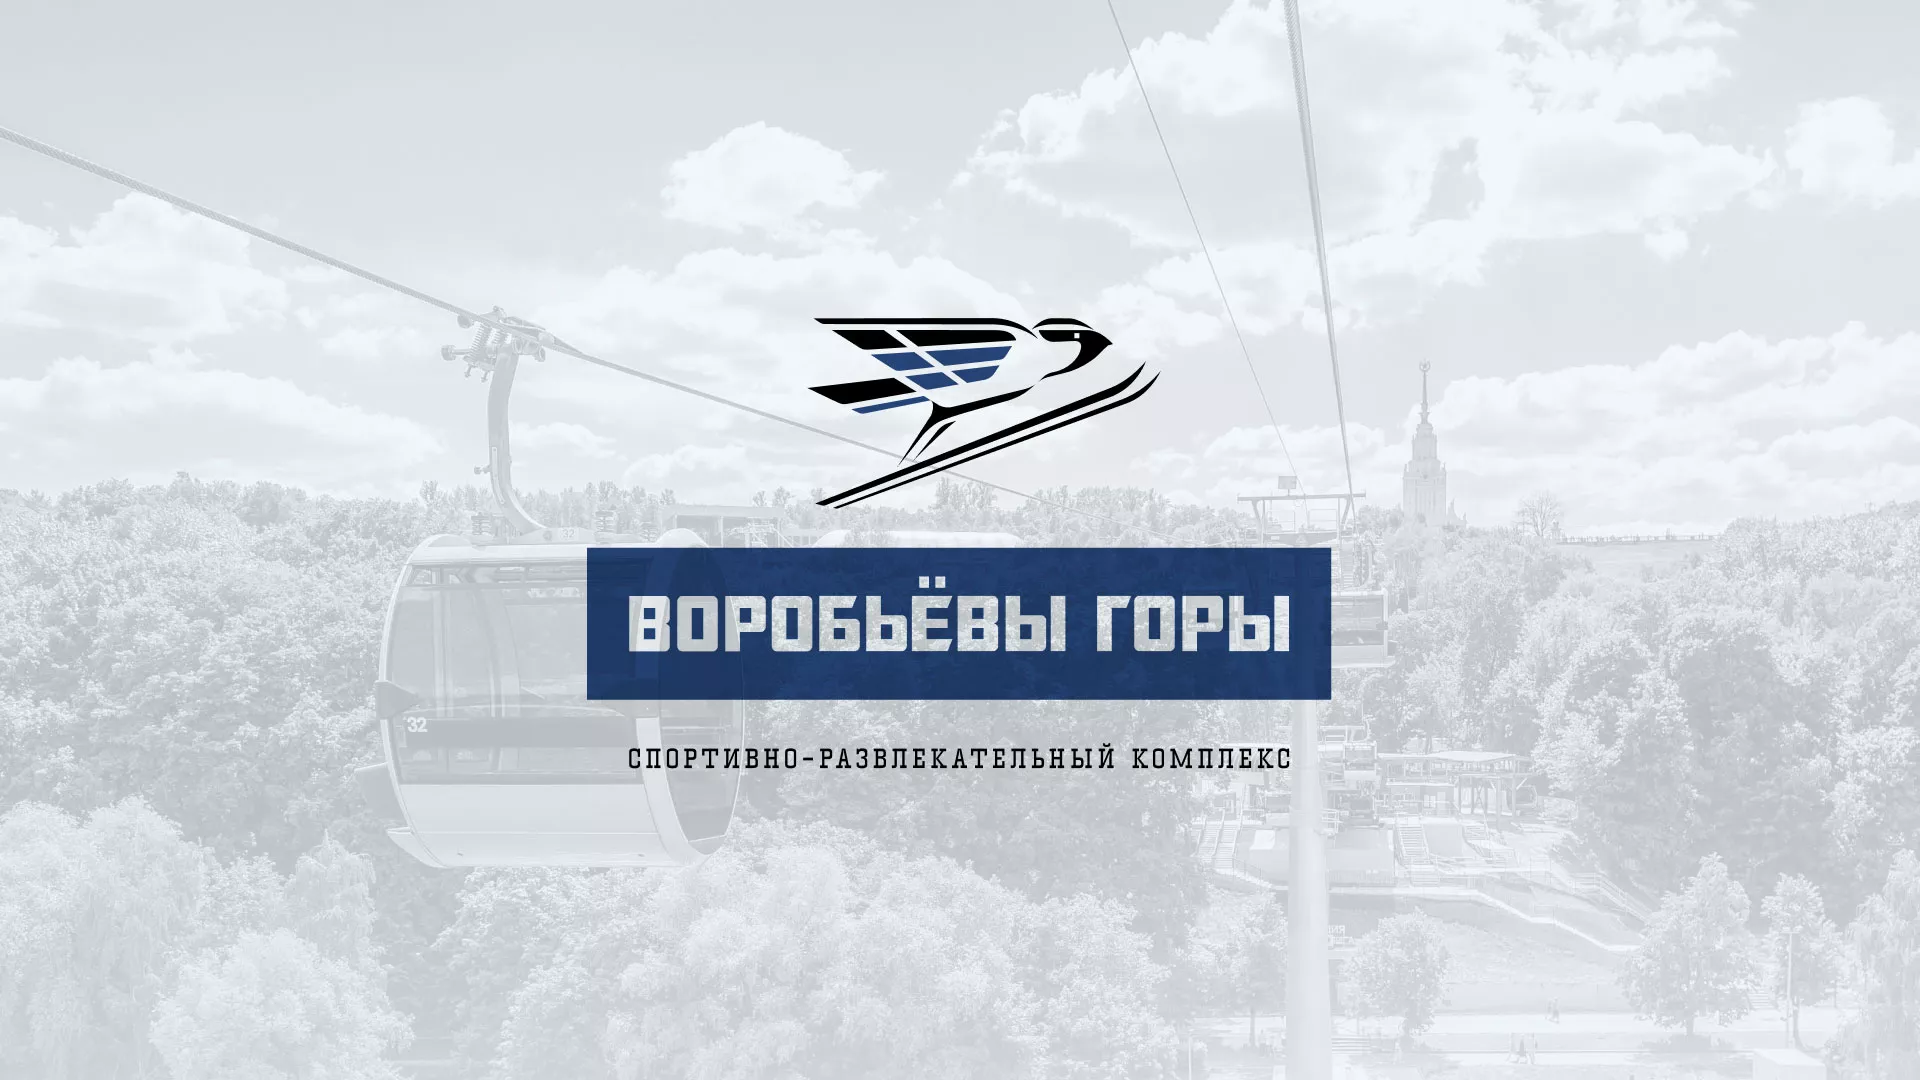 Разработка сайта в Малоархангельске для спортивно-развлекательного комплекса «Воробьёвы горы»